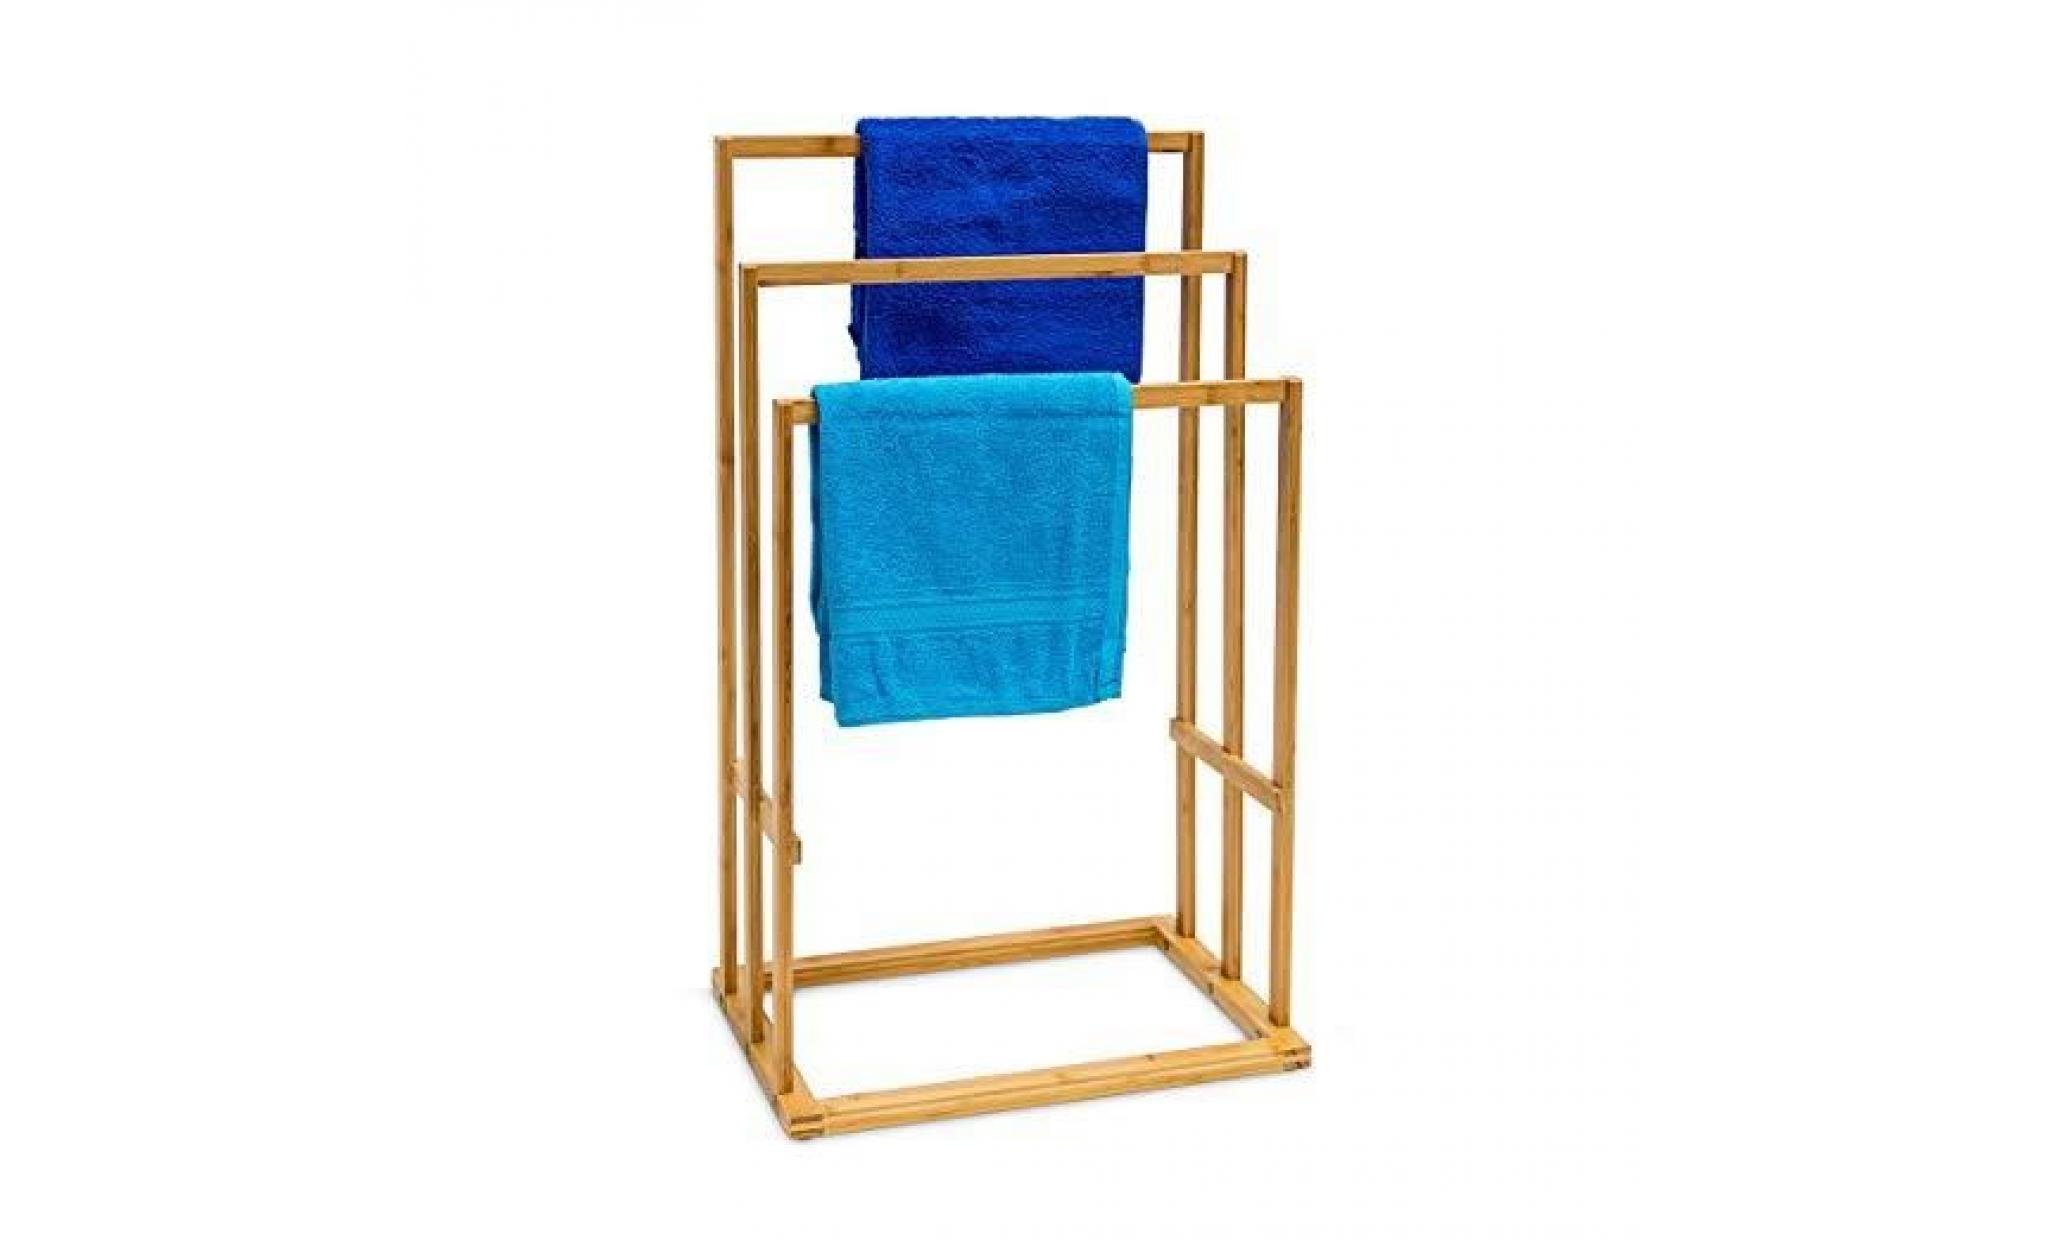 porte serviettes h x l x p: 82 x 43 x 30 cm vêtements en bois de bambou 3 barres salle de bain séchage support habits valet de chamb